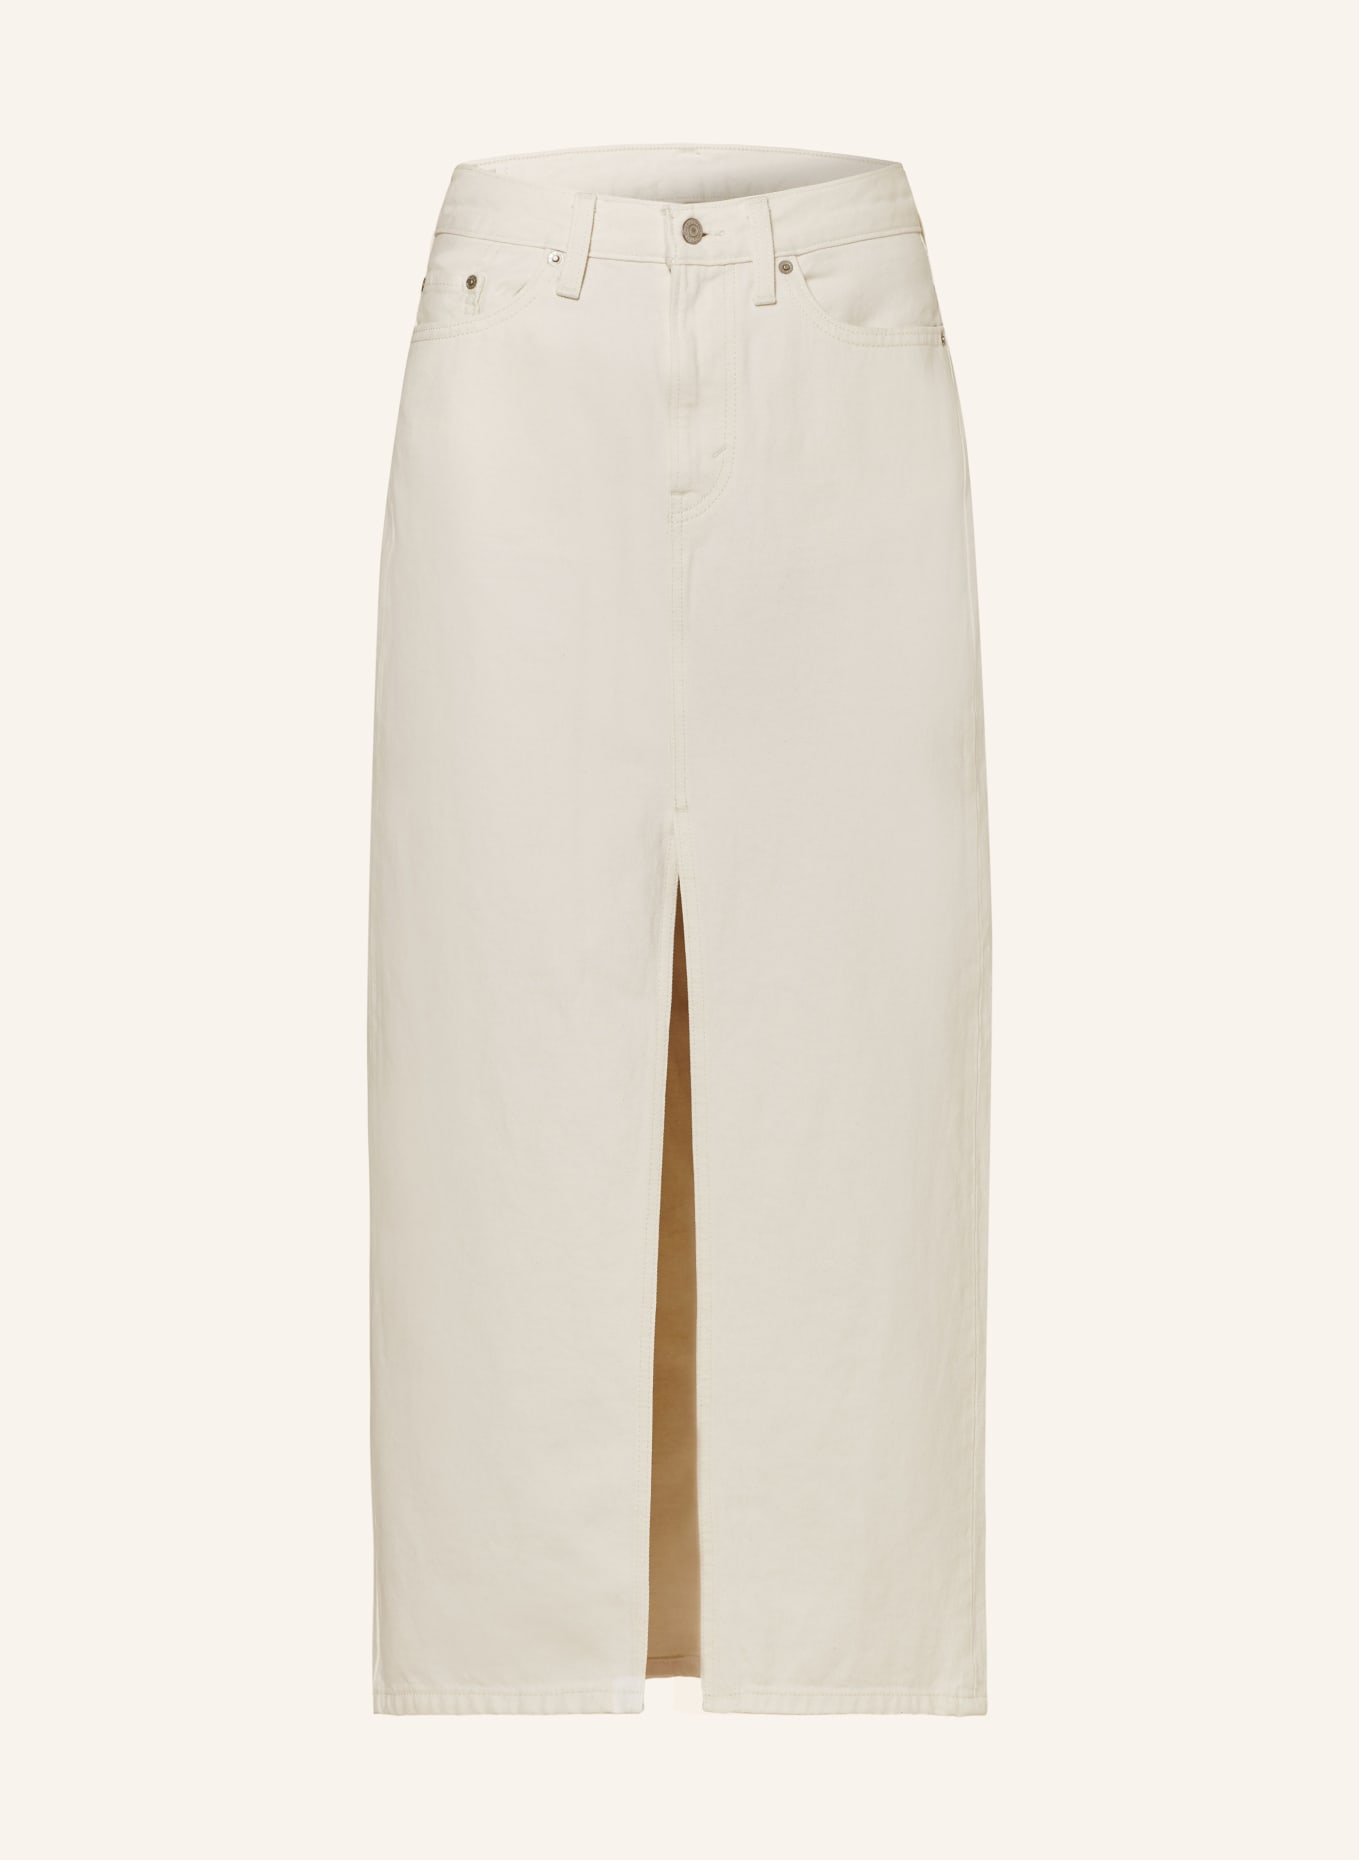 Levi's® 70S MIDI SKIRT - Denim skirt - hello it's me/white denim -  Zalando.de